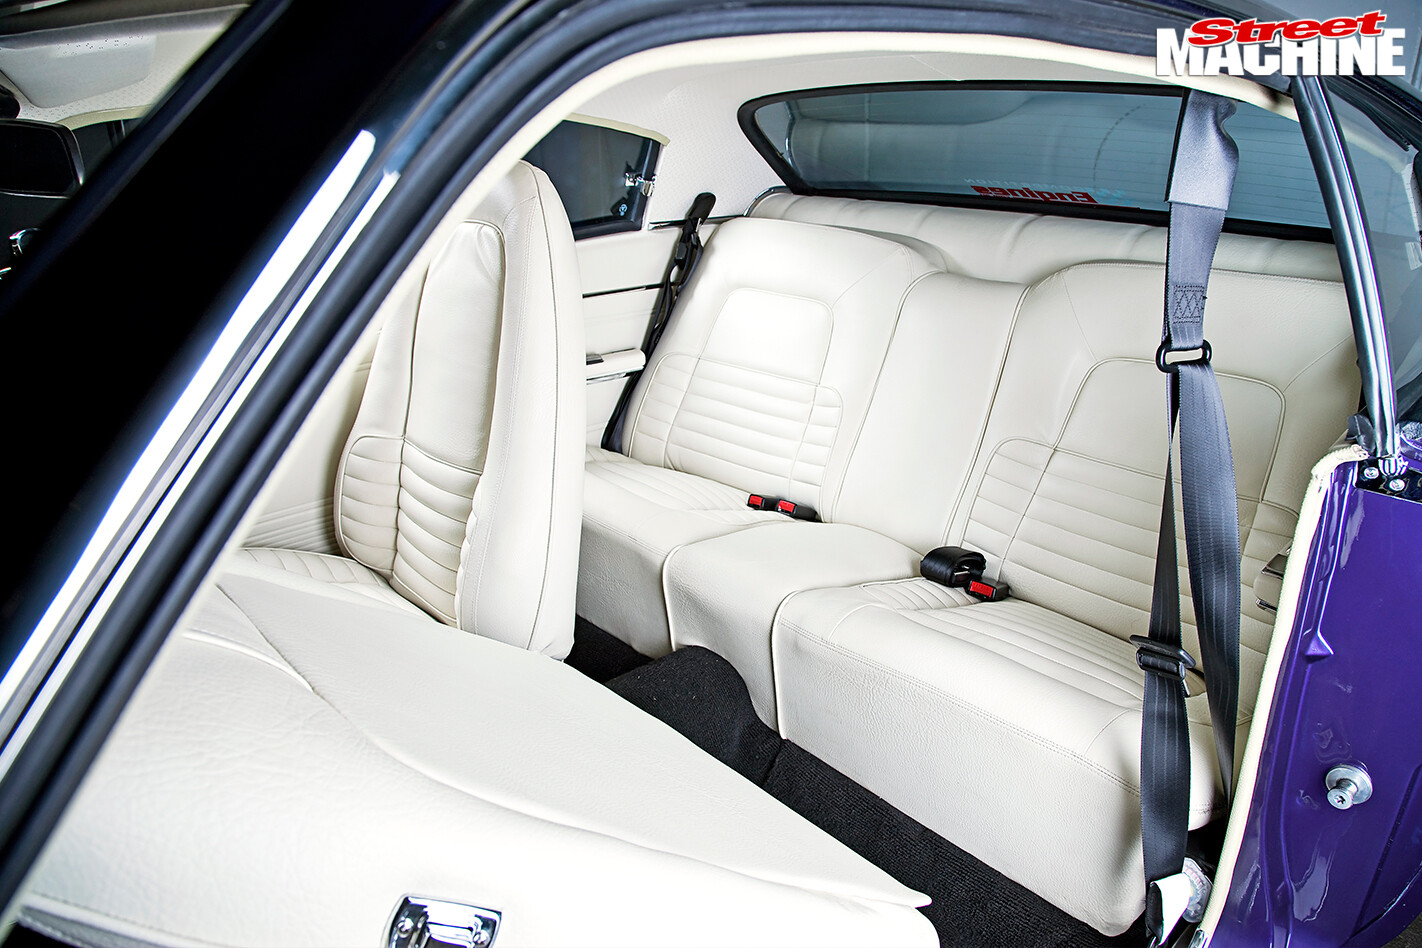 Chrysler -vk -valiant -charger -interior -rear